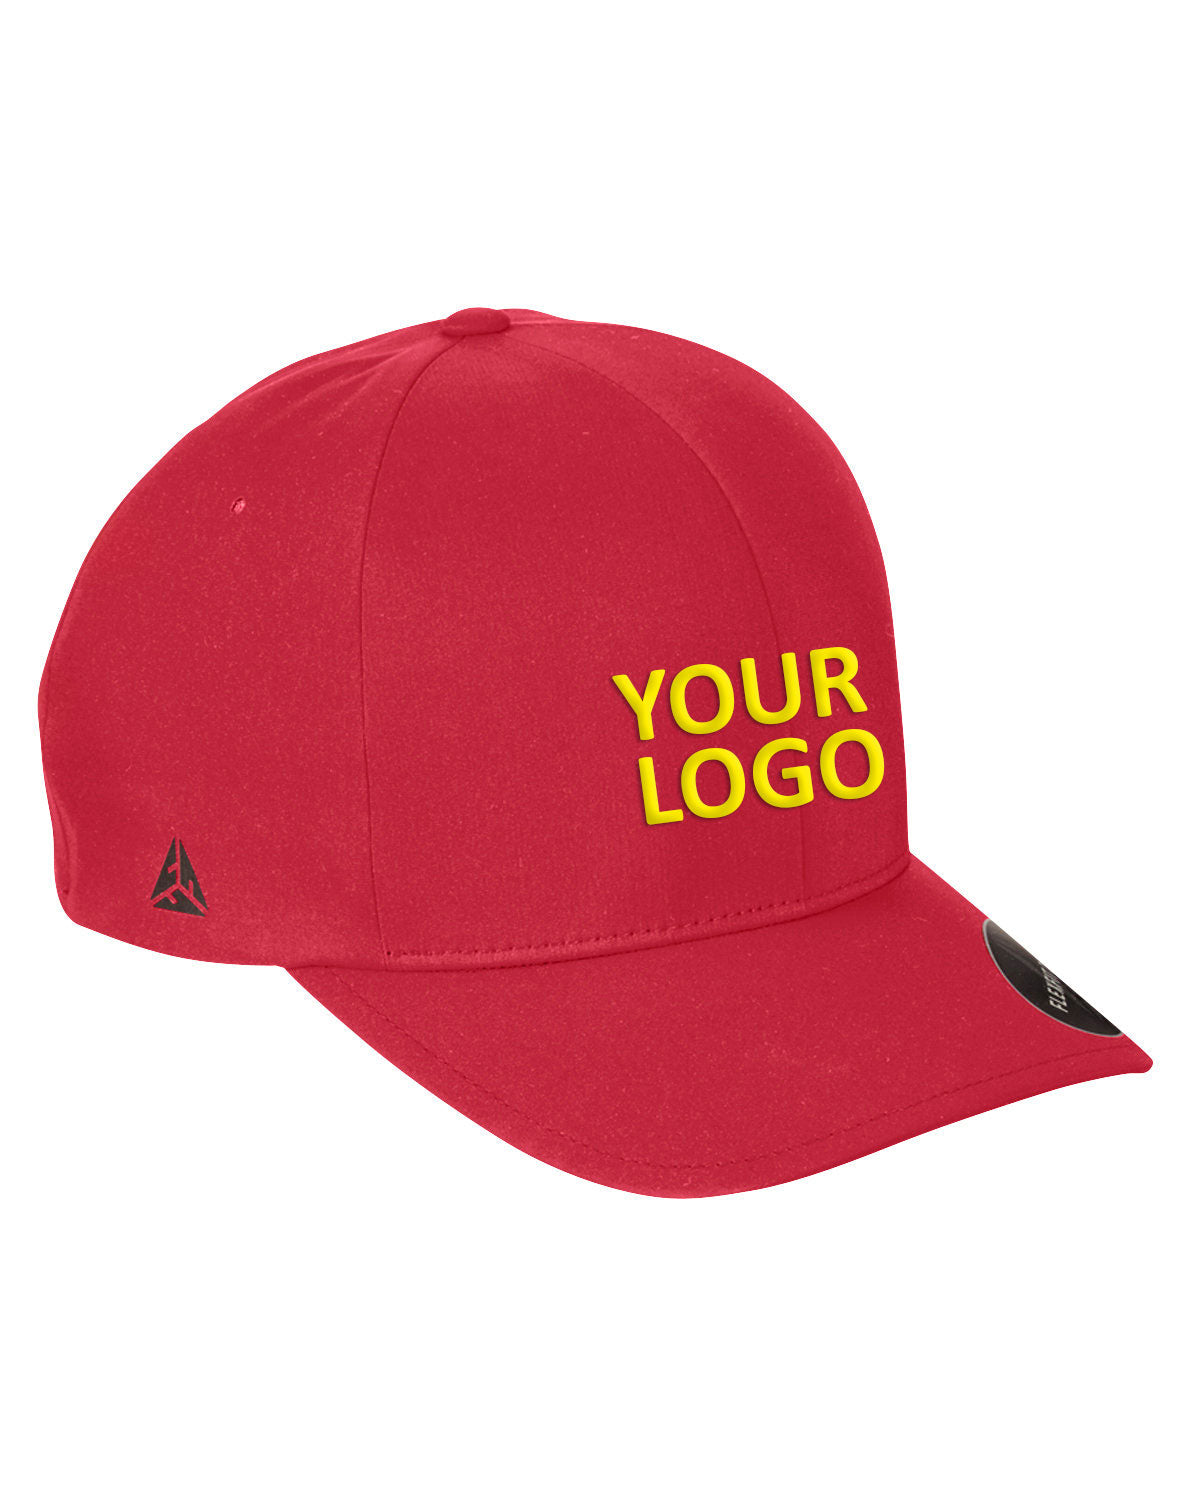 flexfit_yp180_red_company_logo_headwear